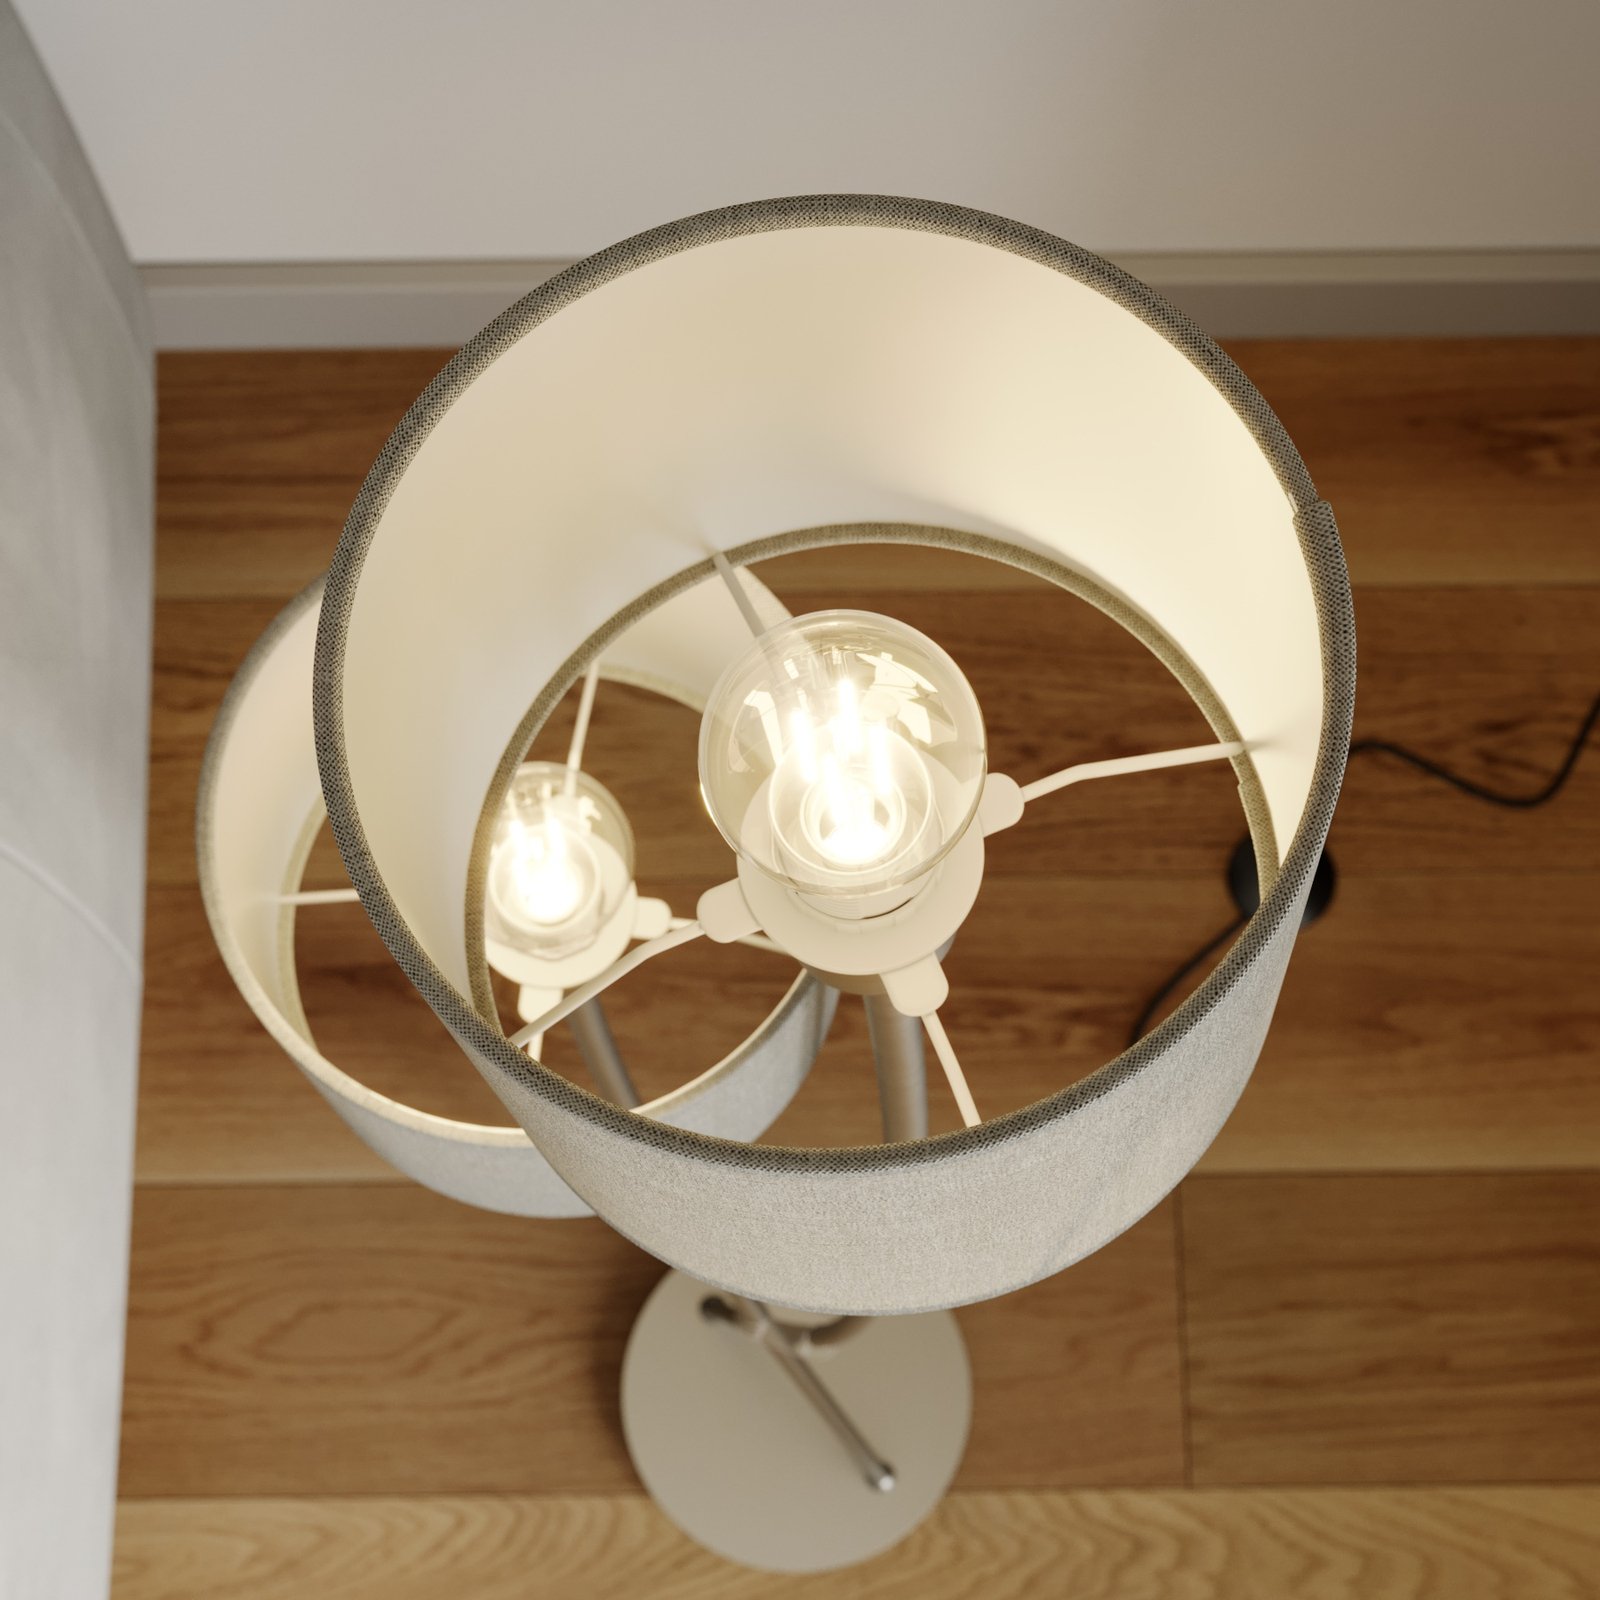 Juljana floor lamp, 2-bulb, fabric lampshades